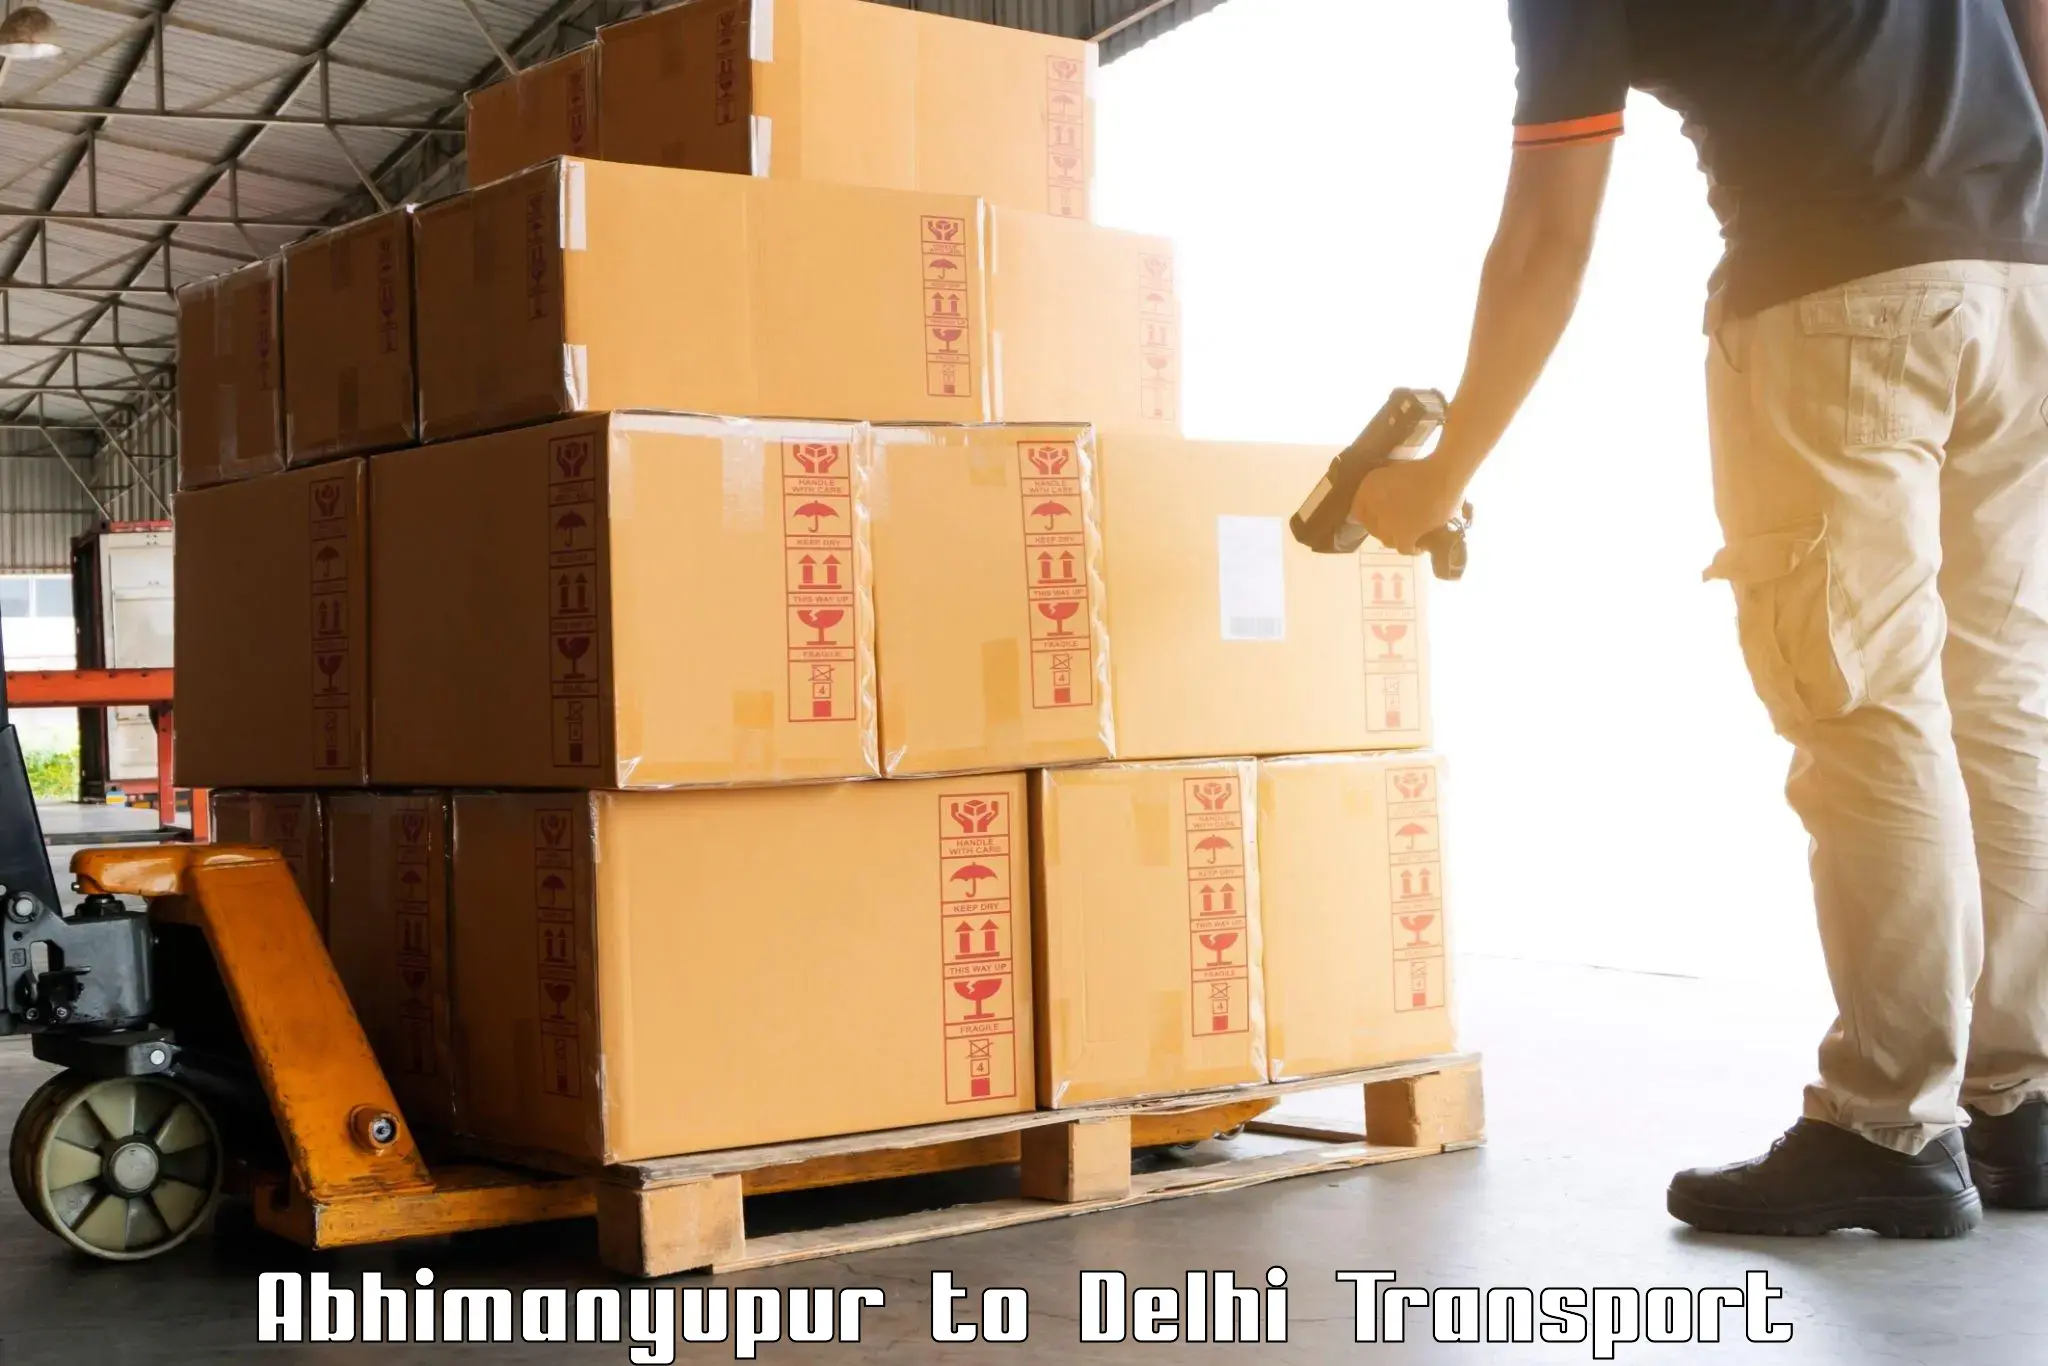 Intercity transport Abhimanyupur to Guru Gobind Singh Indraprastha University New Delhi